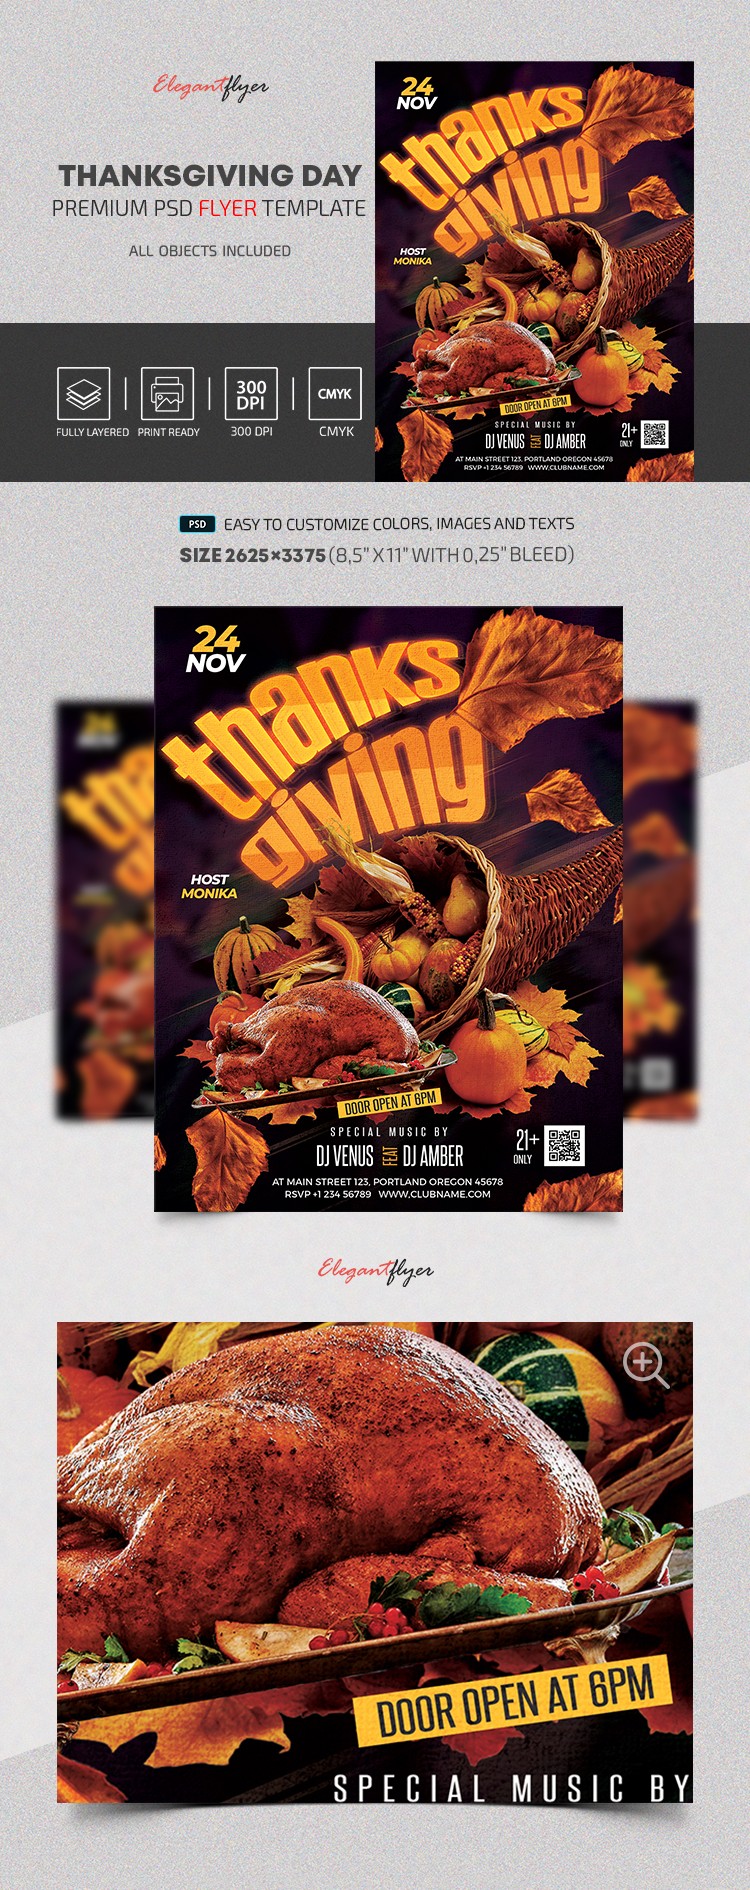 Thanksgiving Day Flyer
Thanksgiving-Tag Flugblatt by ElegantFlyer